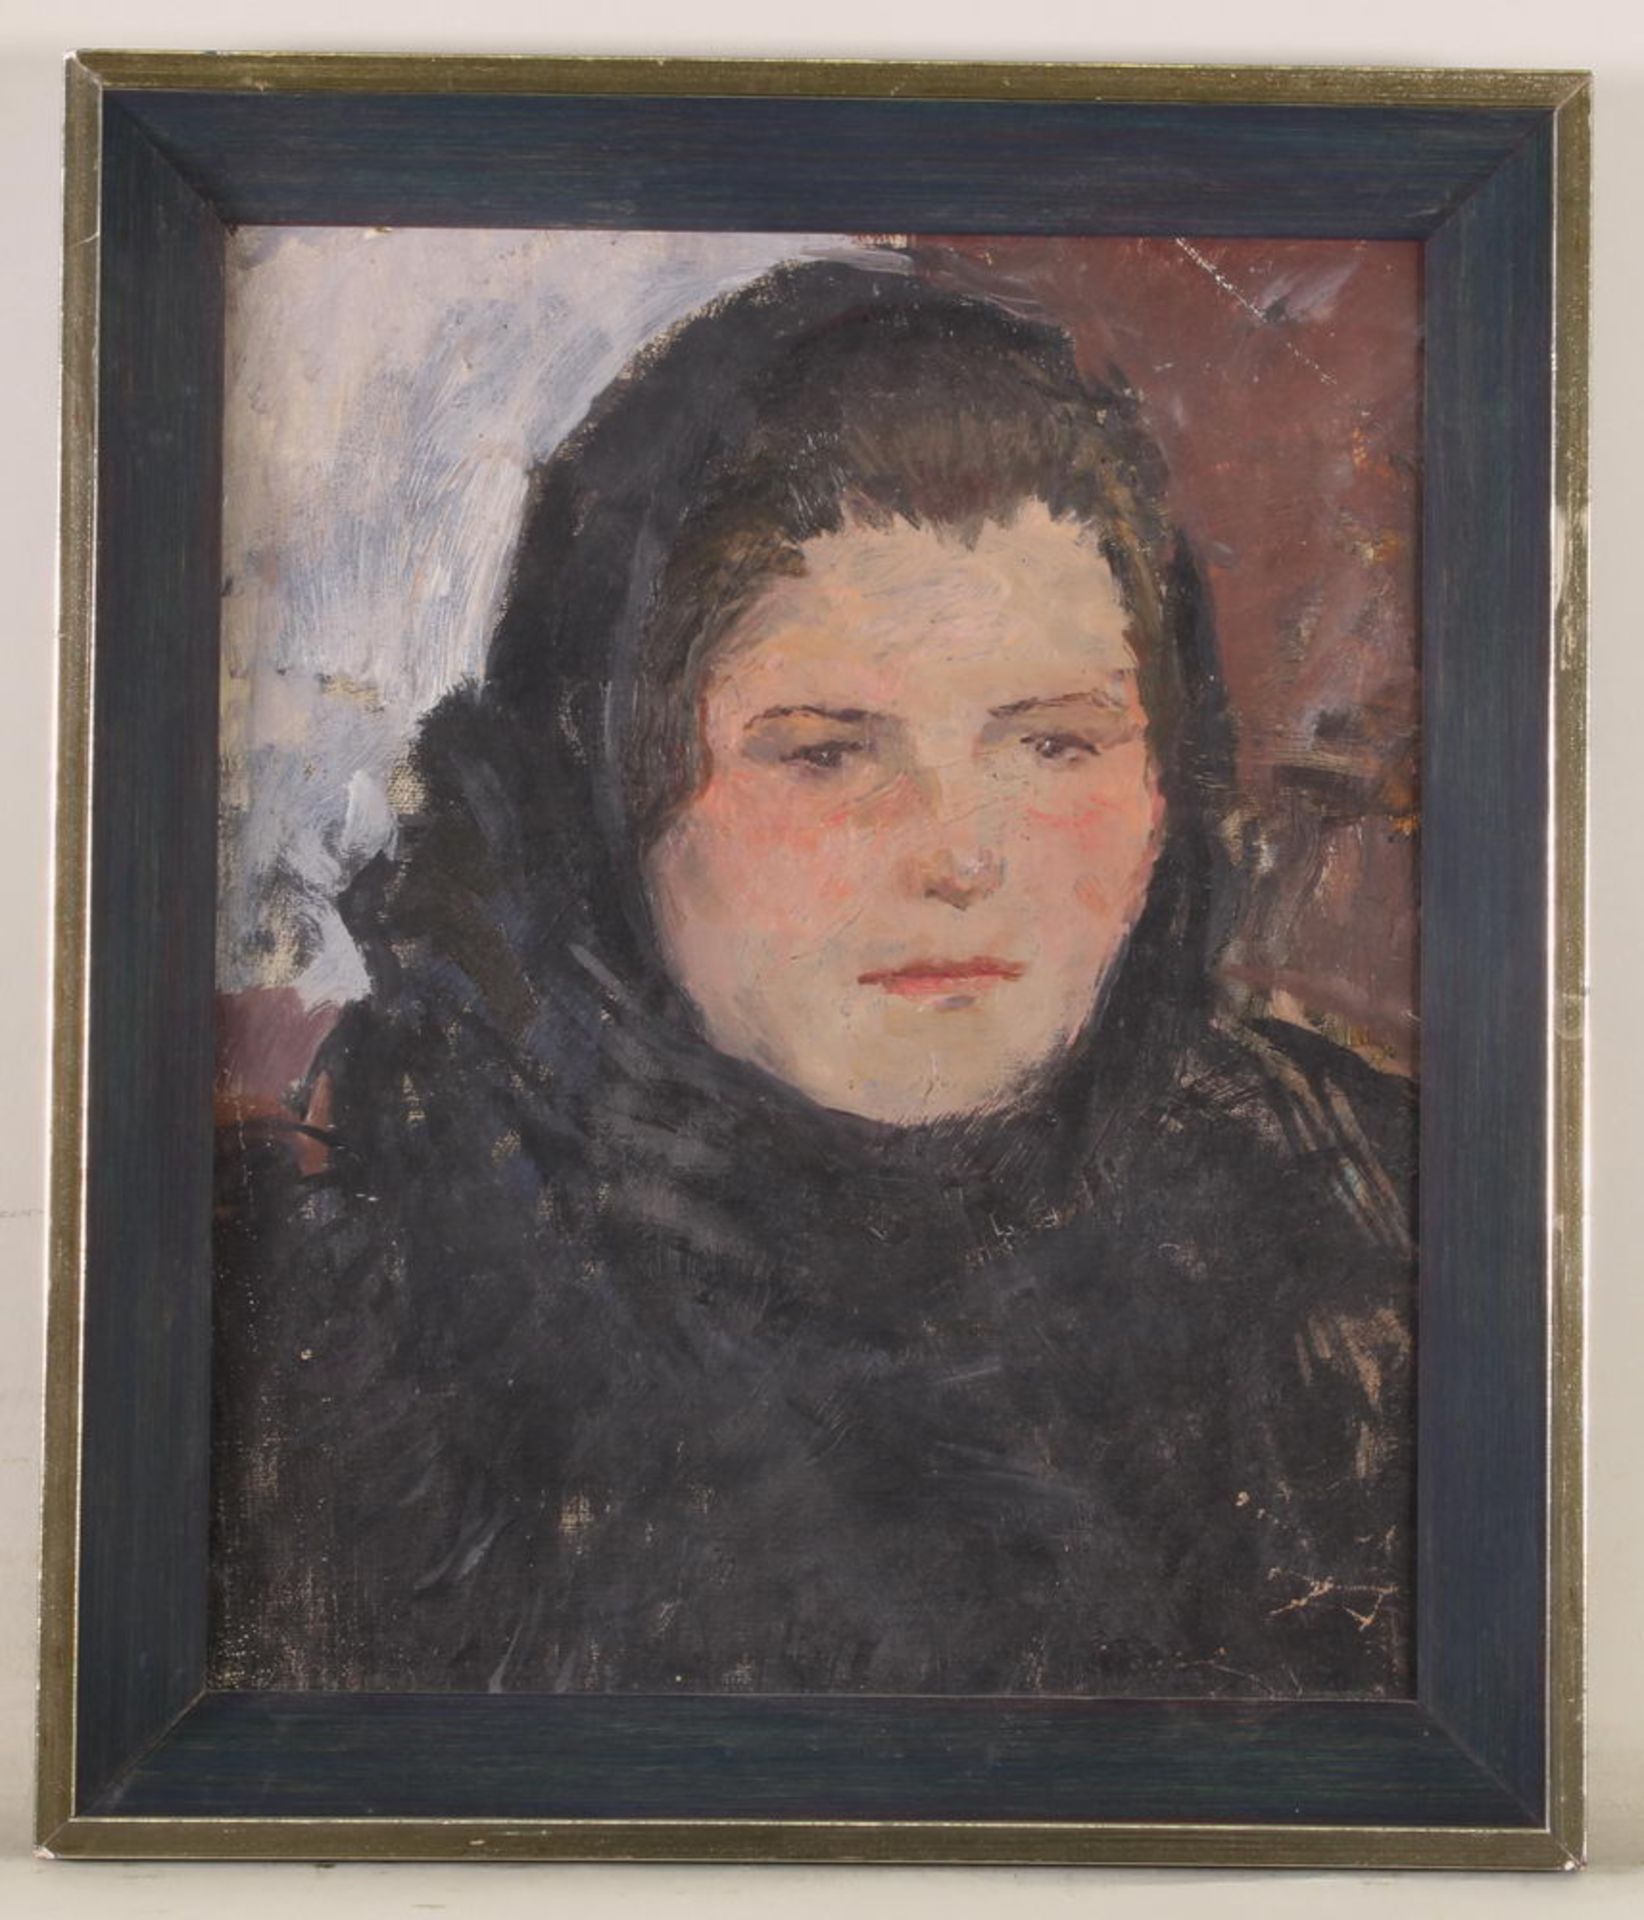 Kalmakova, Olga (1905 - 1999, russische Künstlerin), "Porträt einer jungen Dame", Öl auf Leinwan - Image 2 of 3